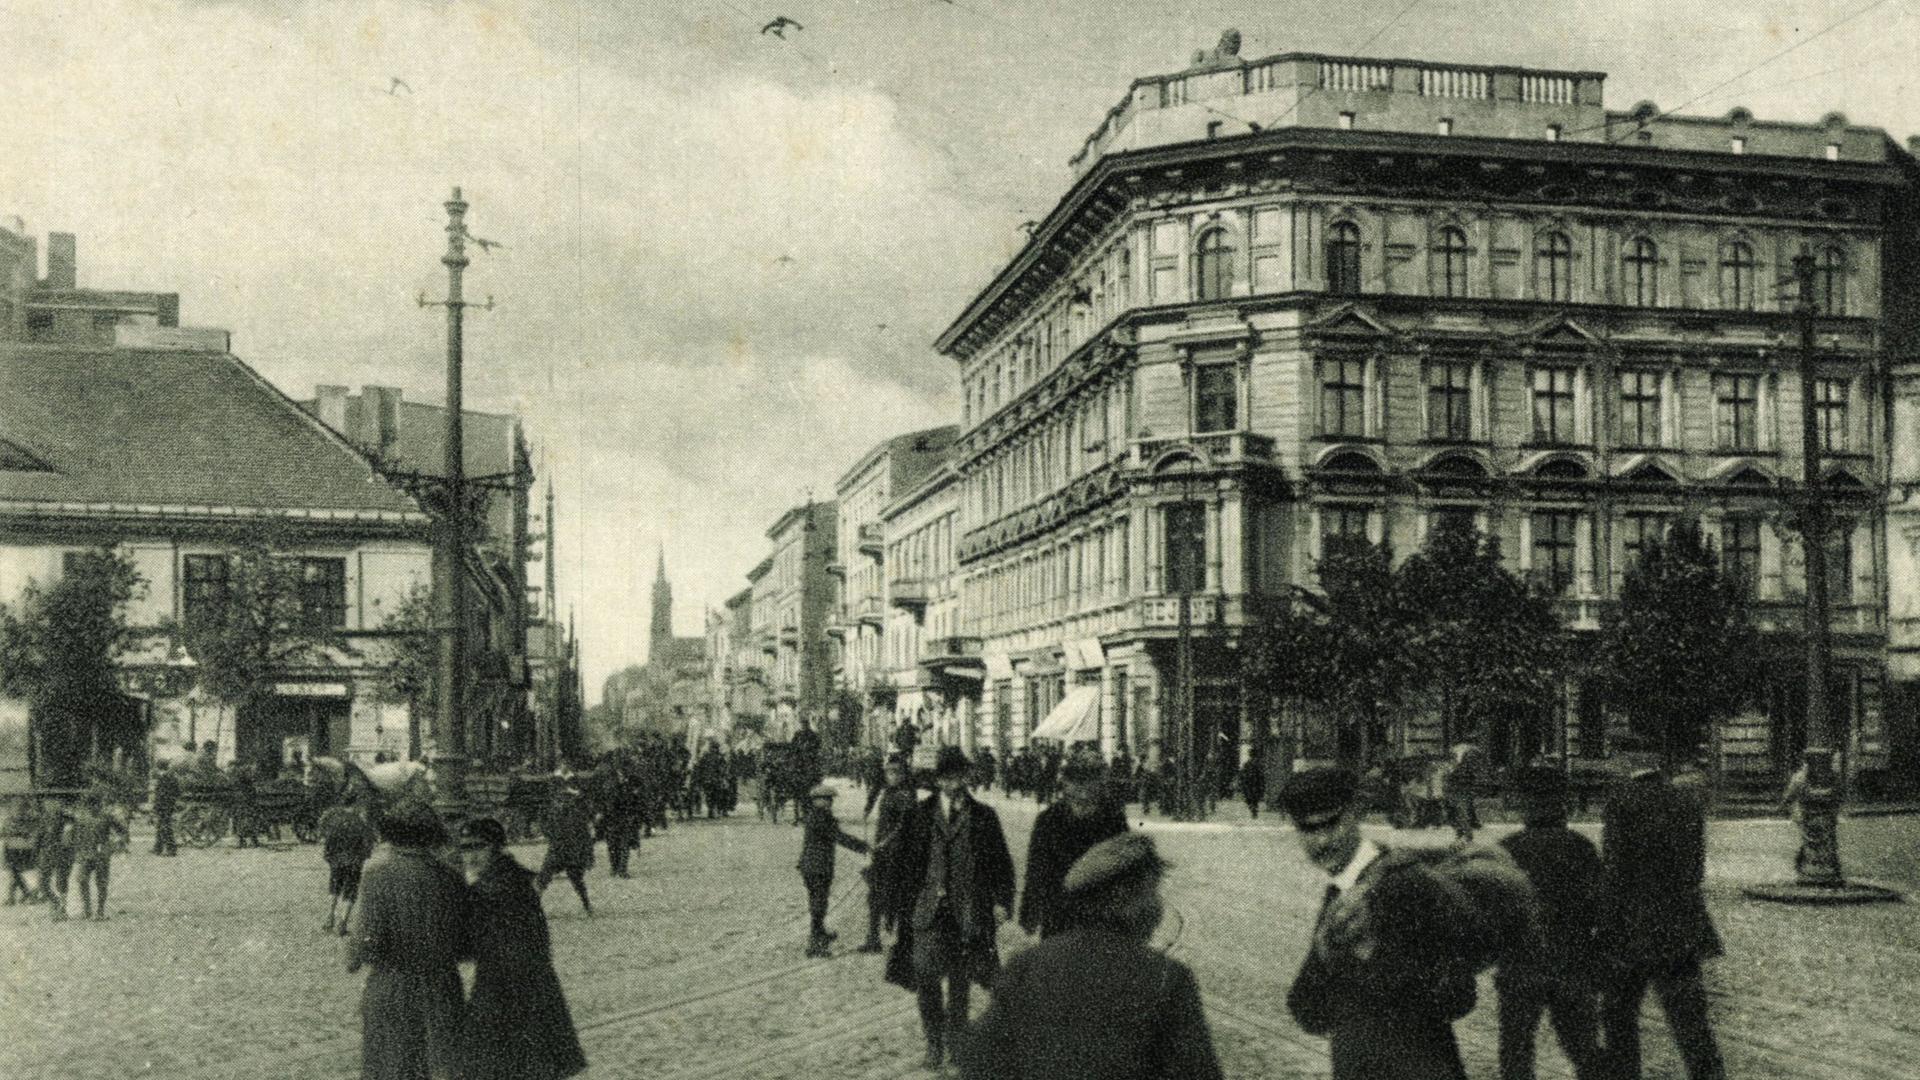 Schwarz-Weiß-Bild eines Gebäudes am Freiheitsplatz in Lodz. Auf dem Platz sind mehrere Menschen zu sehen, die den Platz kreuzen. 